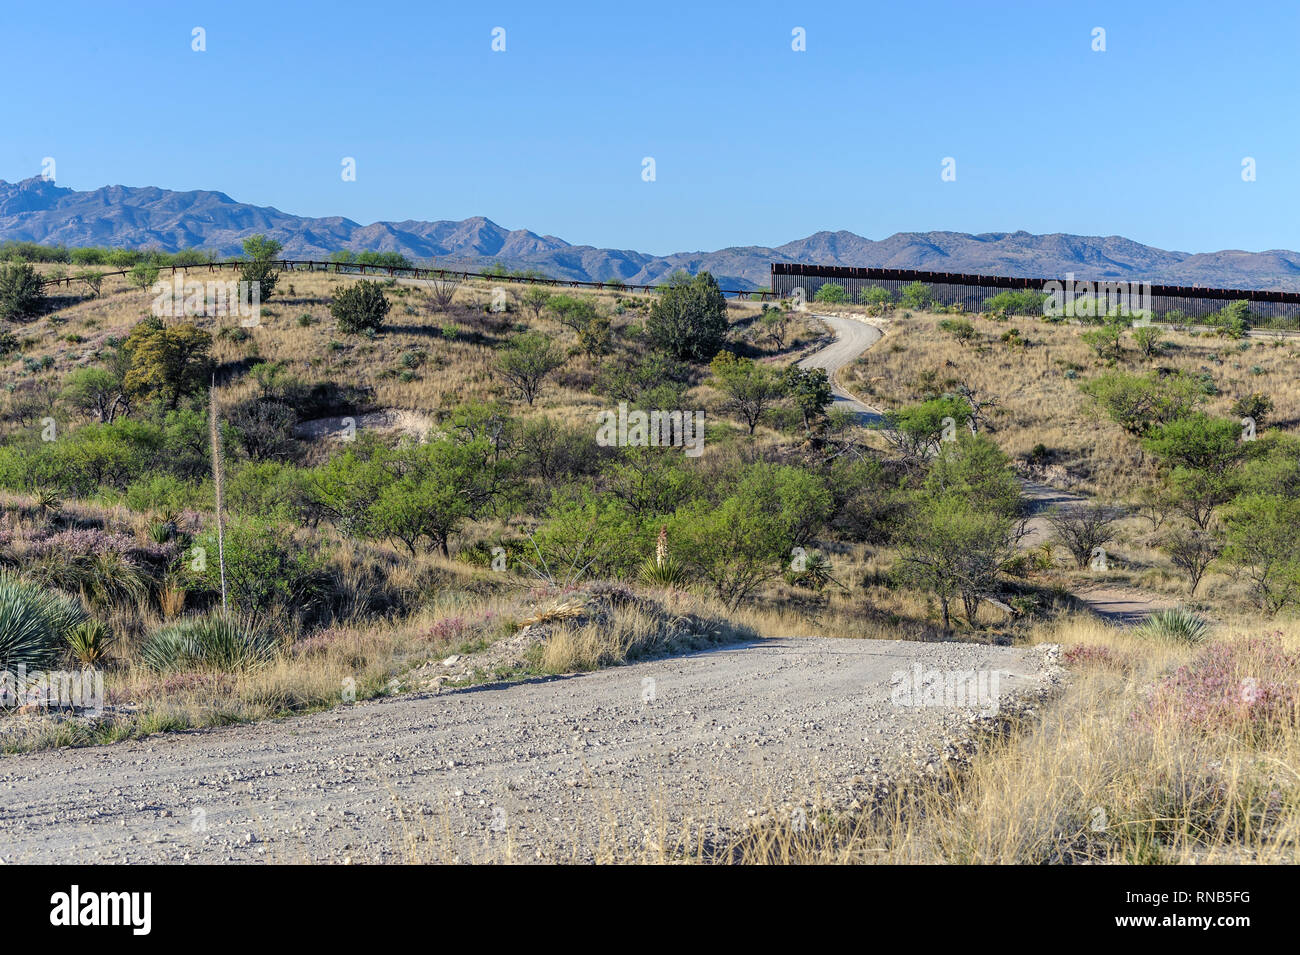 Uns Grenzzaun, zeigt hohe personensperre auf der rechten Seite an seinem östlichen Ende 7 Meilen östlich von Nogales AZ., mit Kraftfahrzeug Barriere" auf der linken Seite; April 2018 Stockfoto